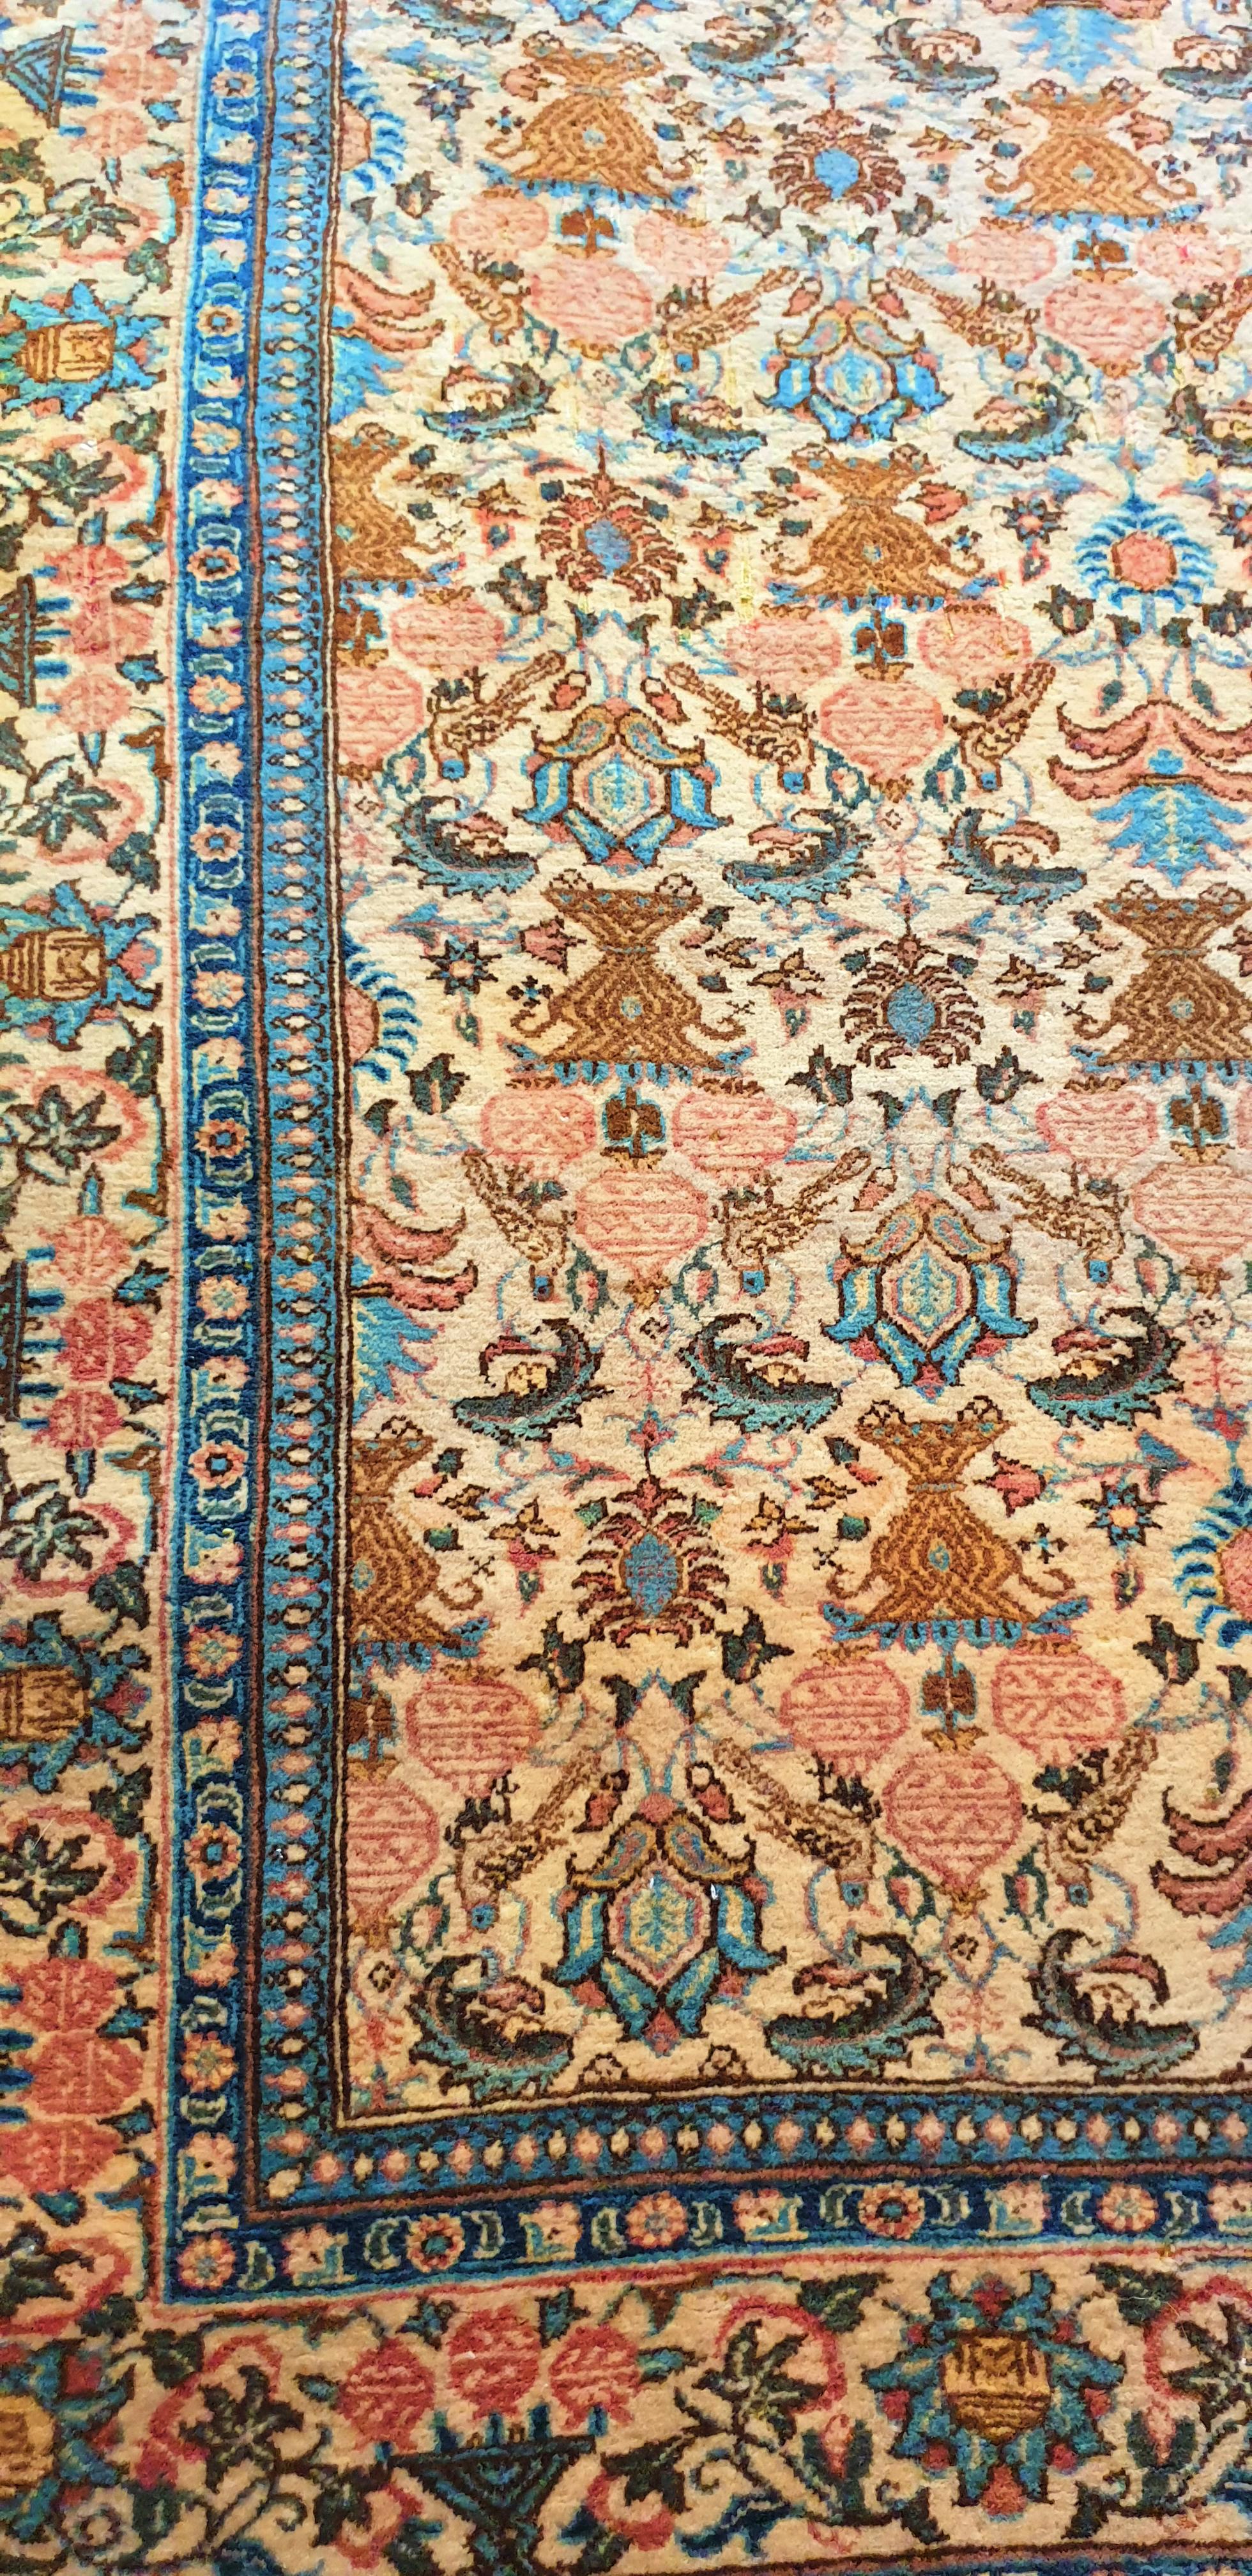 916 - sehr schöner Teppich aus dem Ende der Mitte des 20. Jahrhunderts mit einem sehr schönen Blumenmuster und hübschen Farben in den Farben rot, blau, grün und gelb auf beigem Grund, komplett handgeknüpft mit Wollsamt auf einer Baumwollgrundlage.
  